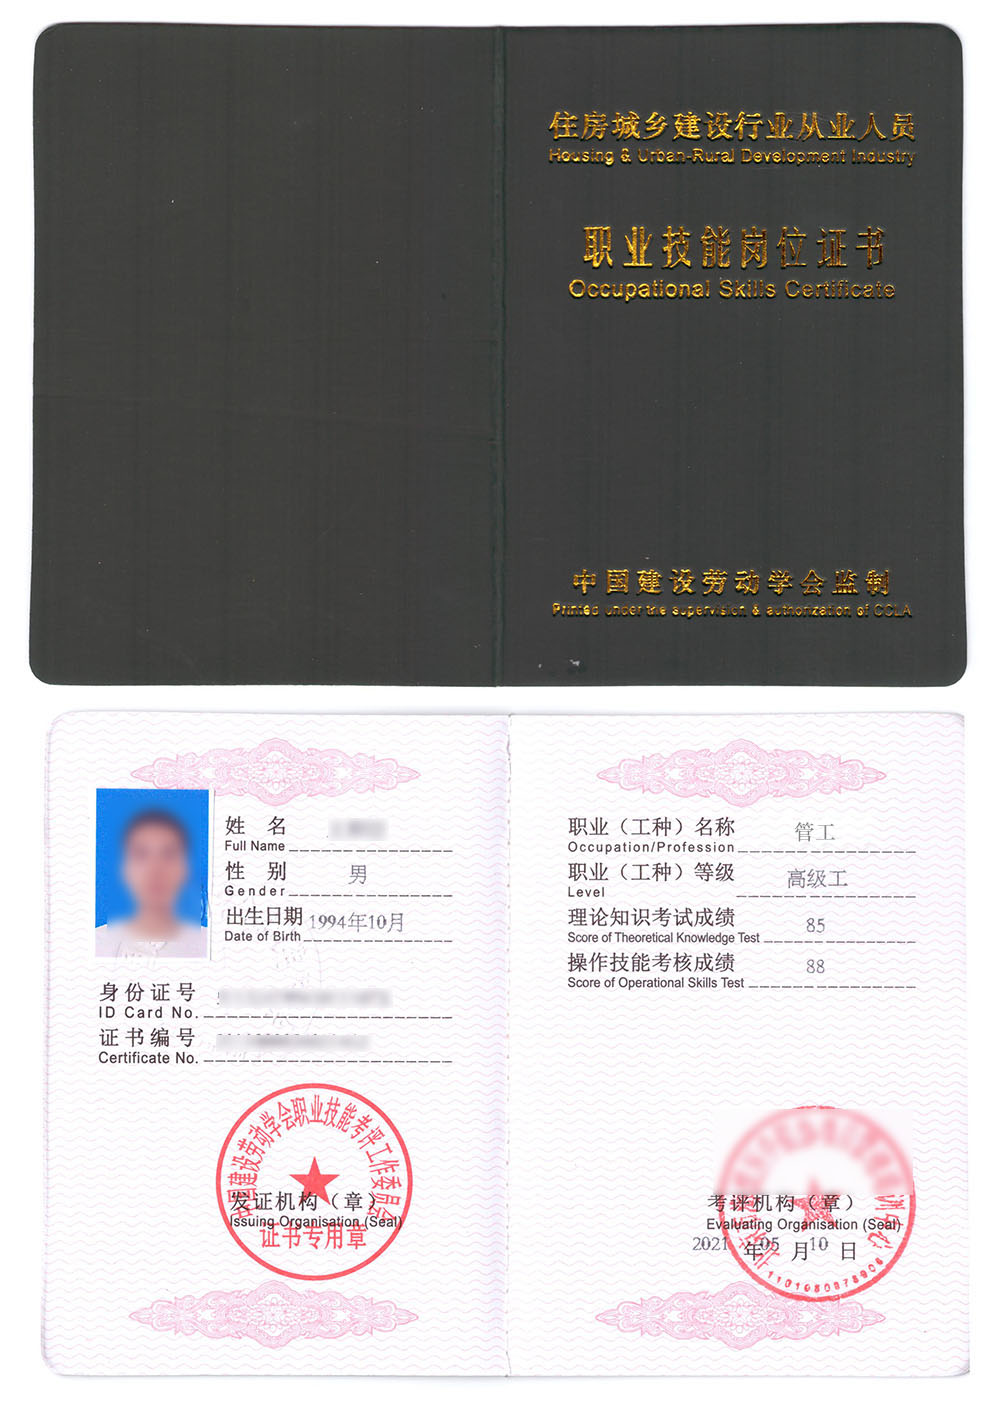 中国建设劳动学会 职业技能岗位证书 管工证证书样本